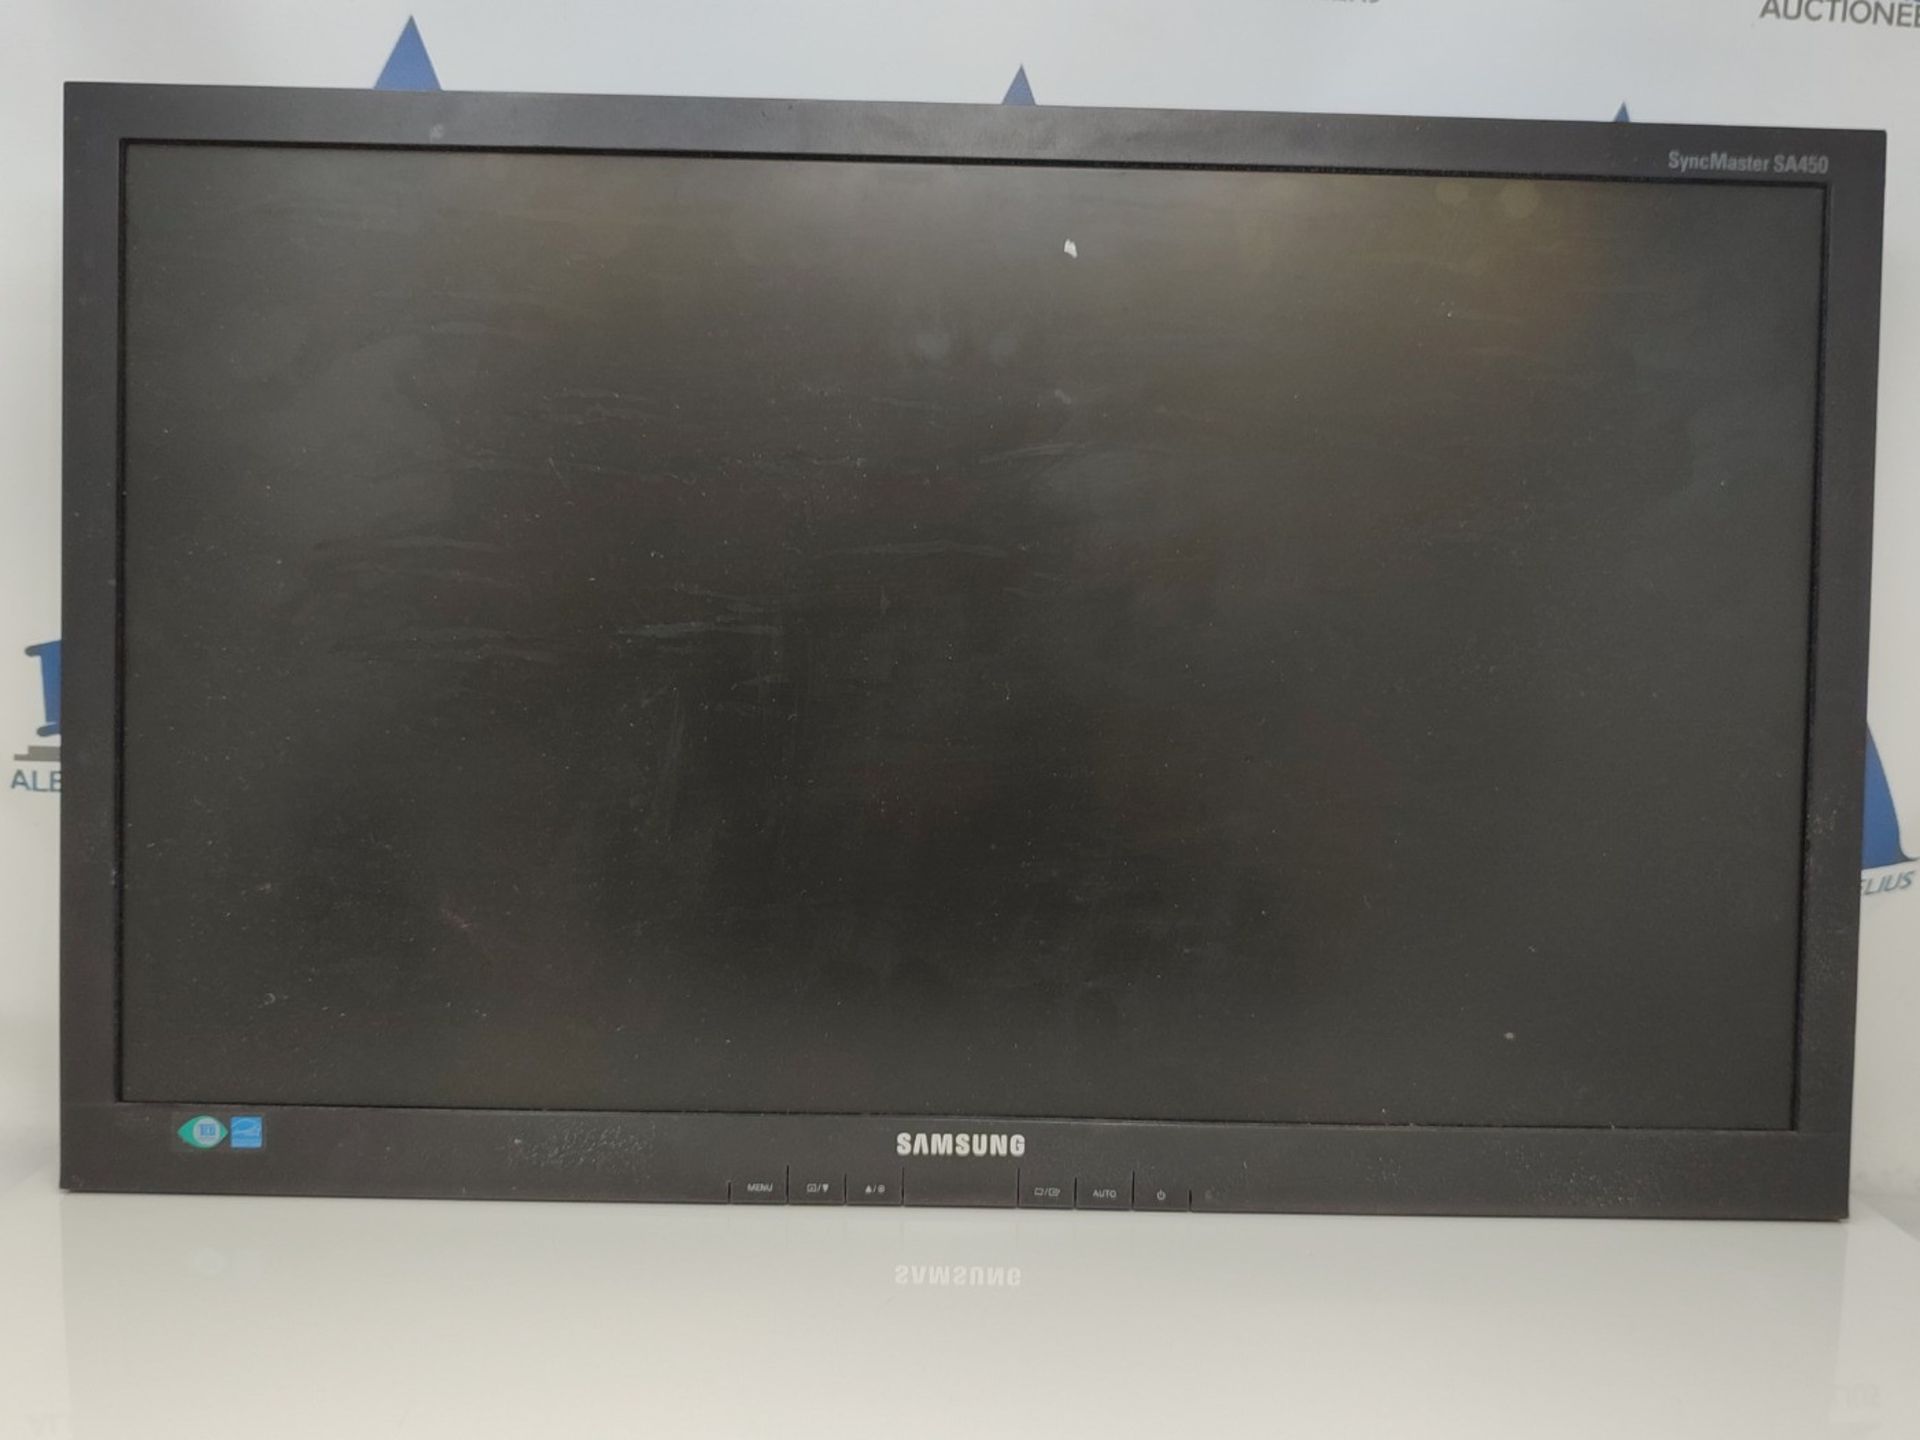 Samsung LS24A450 243 VGA DVI Color Display Monitor